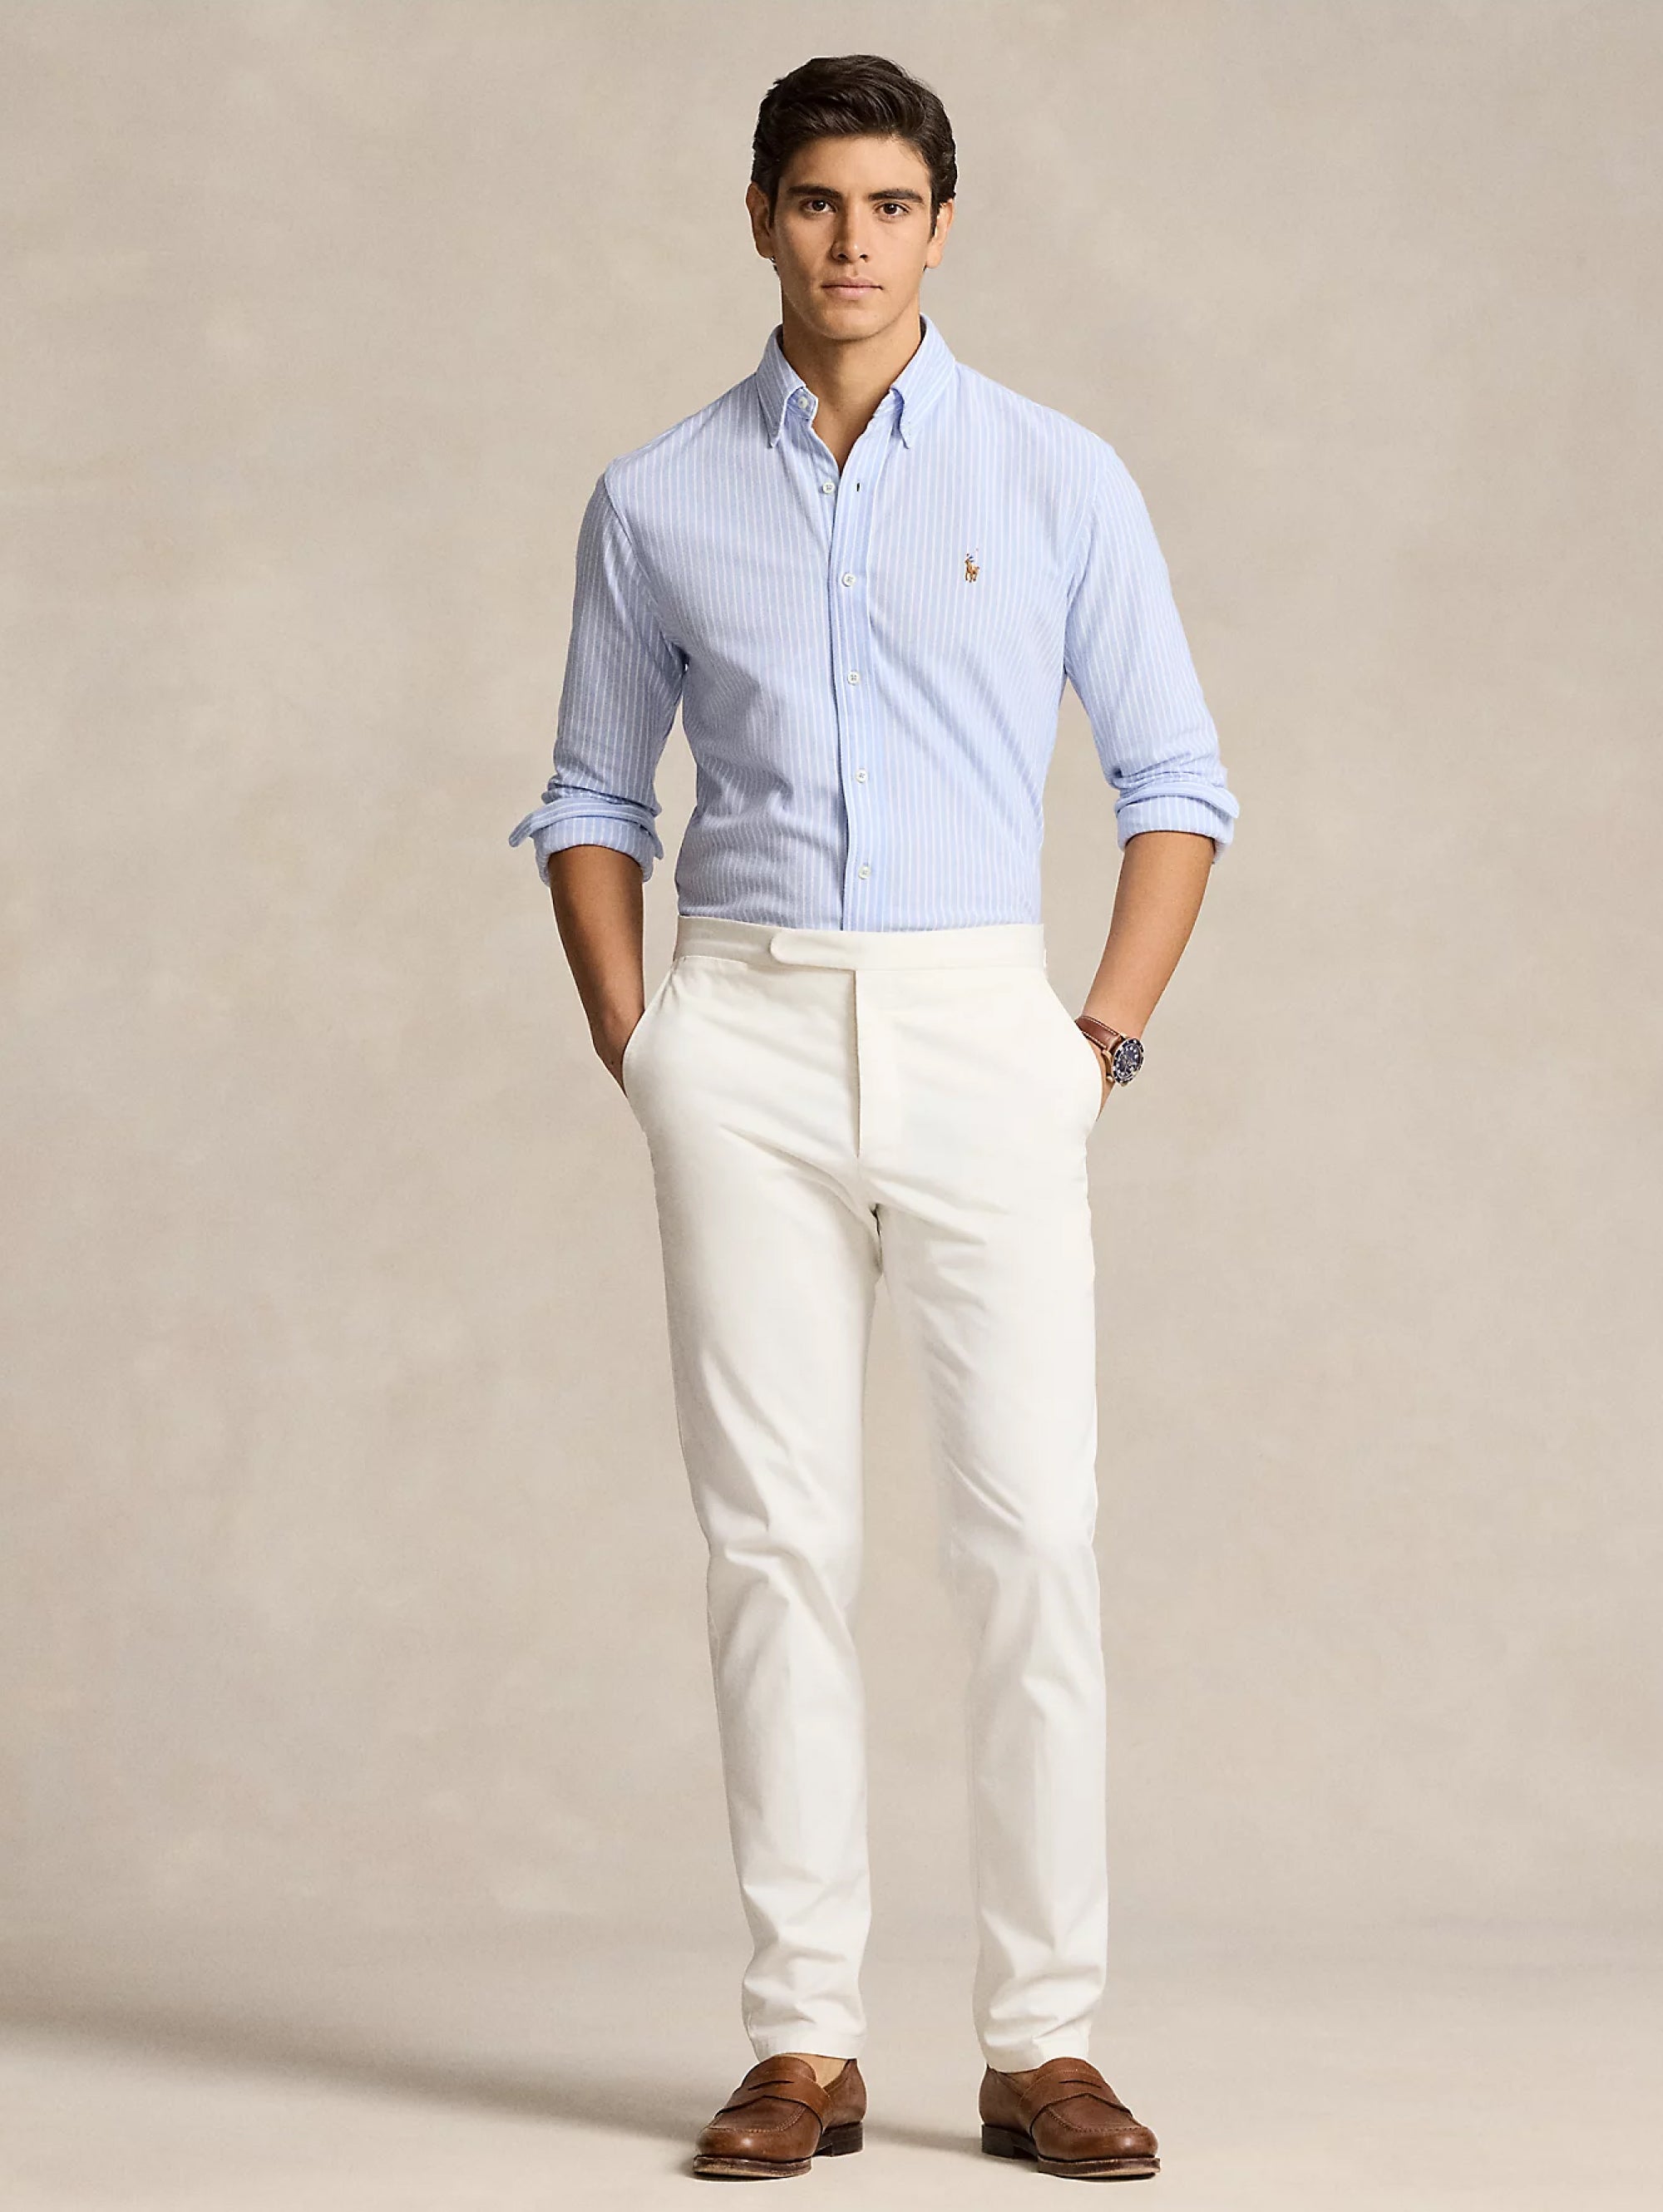 White/Blue Striped Knit Oxford Shirt